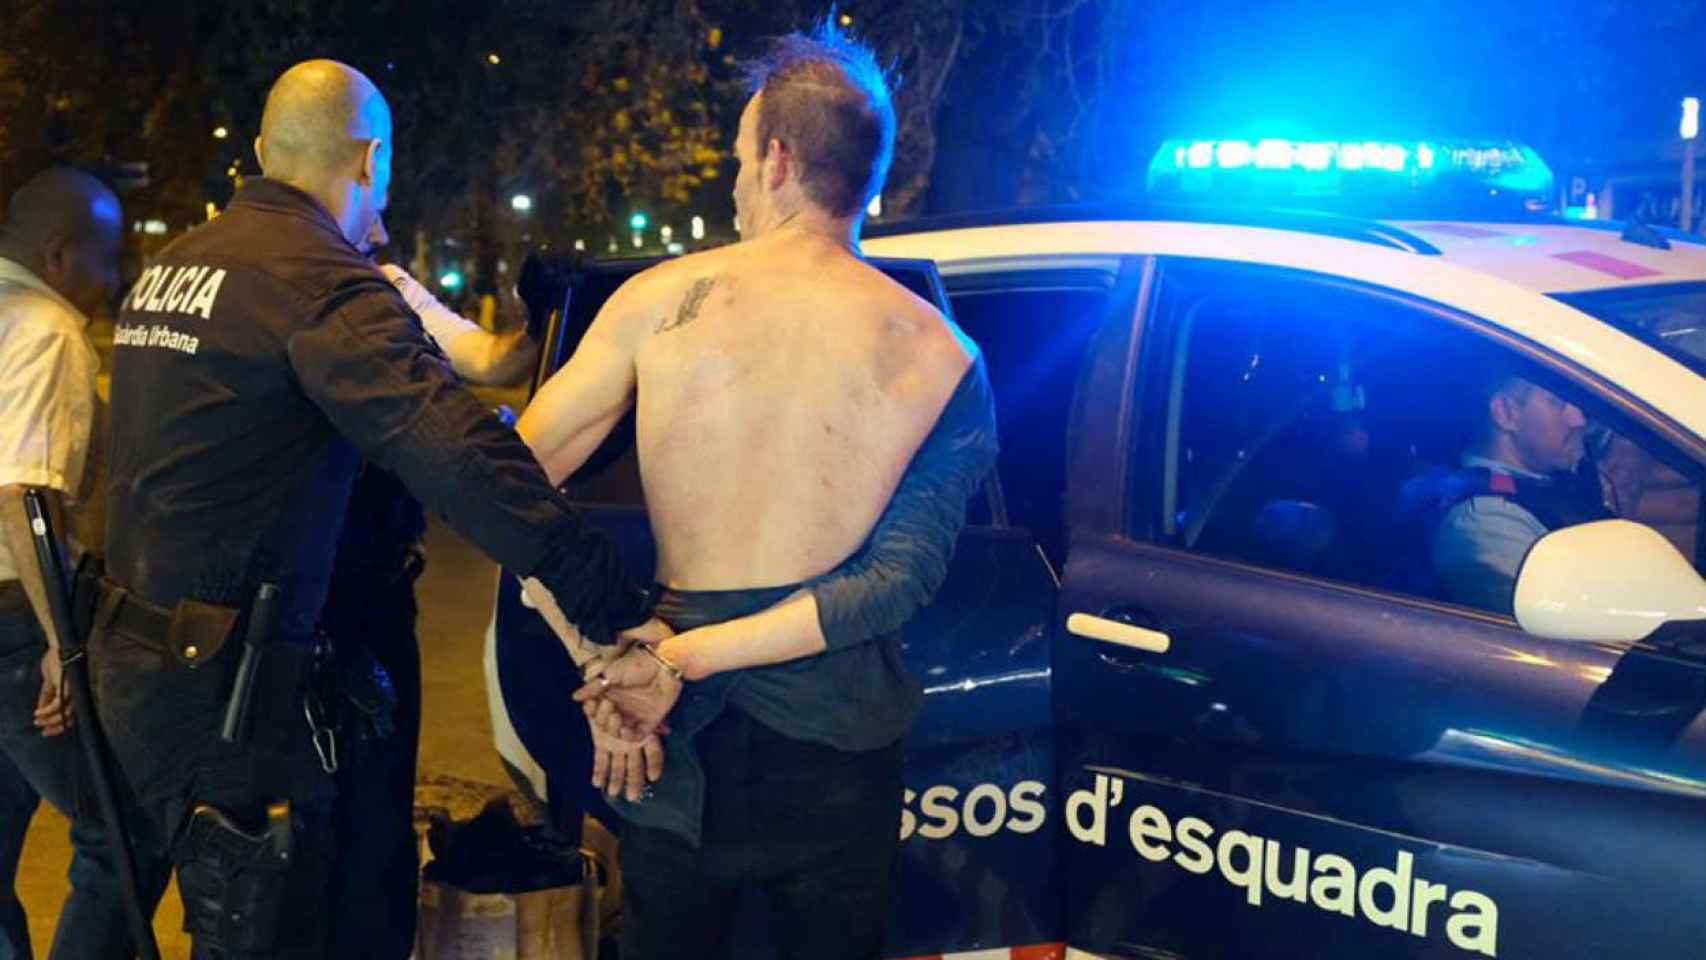 Momento en que el presunto agresor es introducido en un coche de los mossos / Vicens Forner